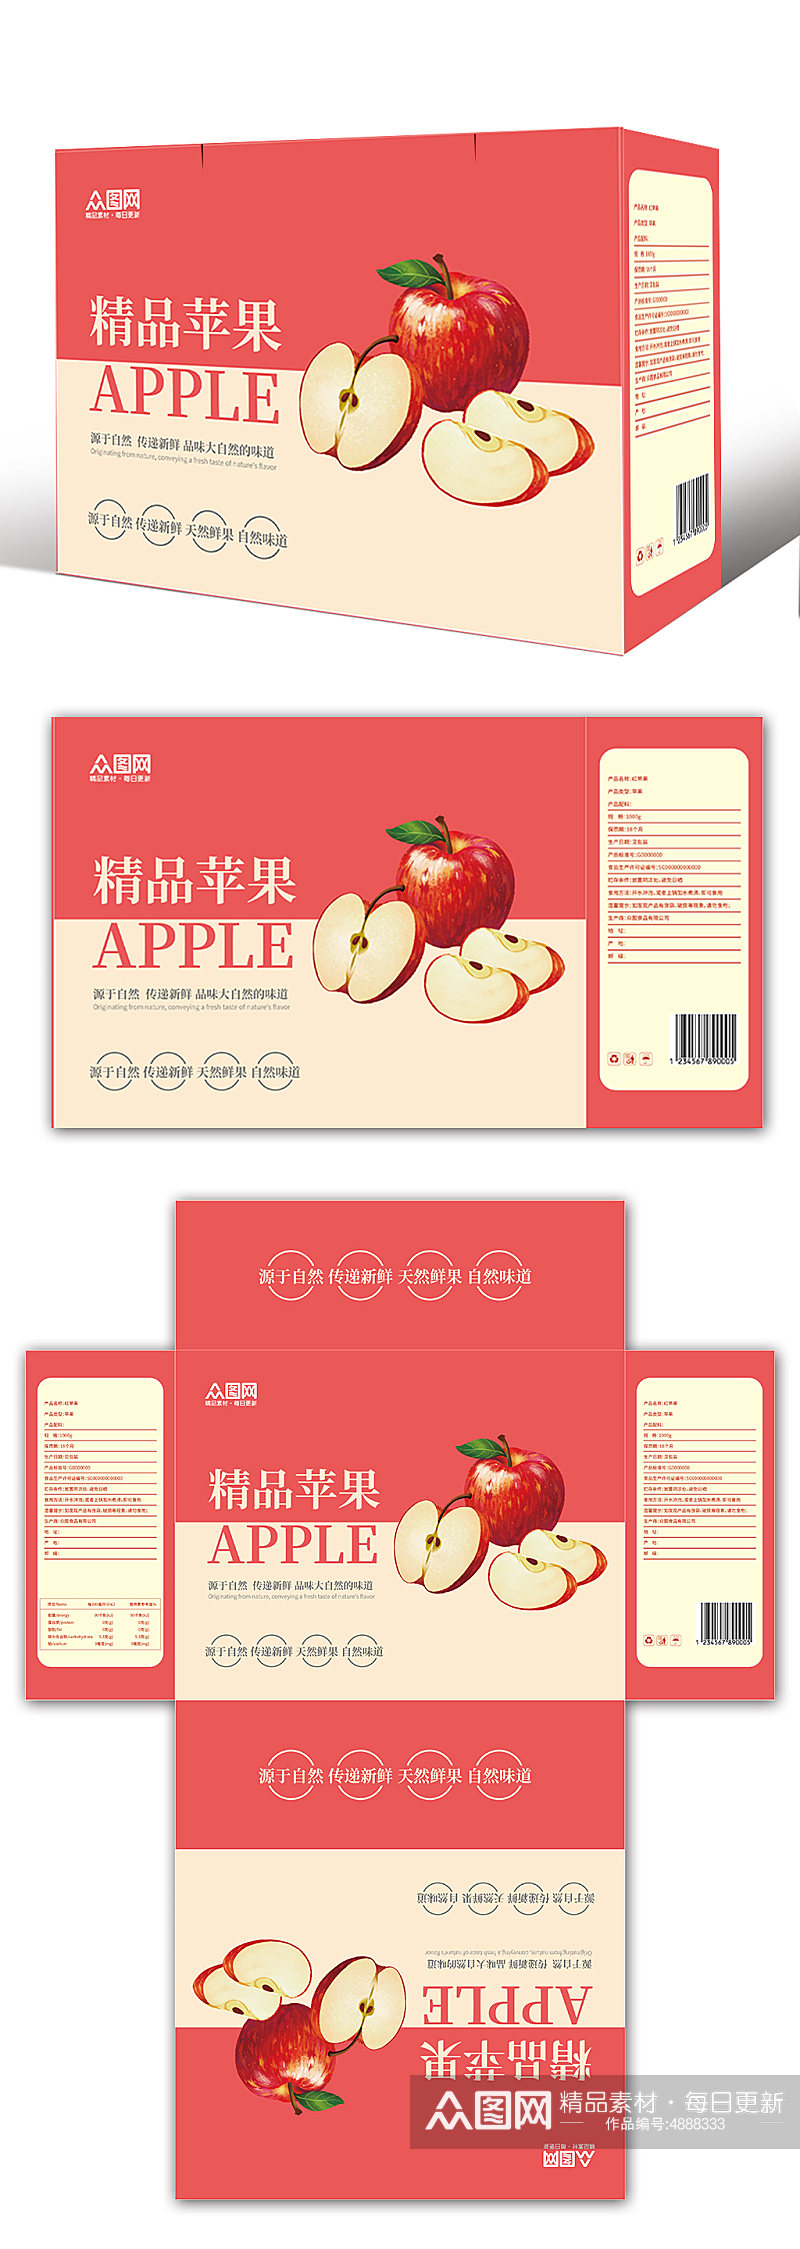 农产品精品苹果水果包装礼盒设计素材